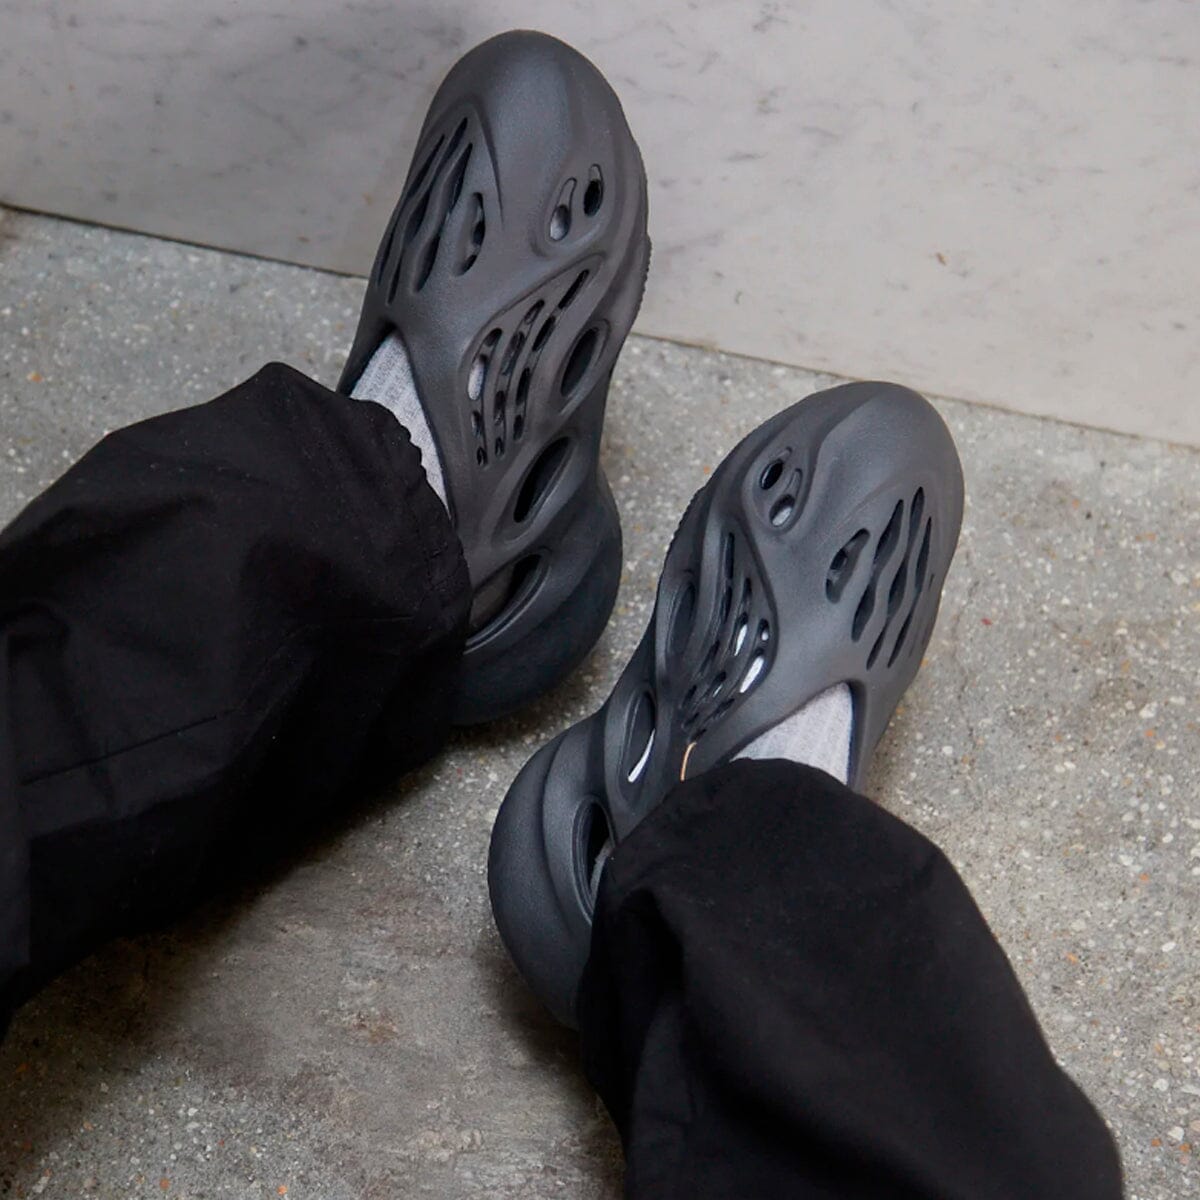 Adidas Yeezy Foam Runner Onyx Yeezy Foam Runner Blizz Sneakers 